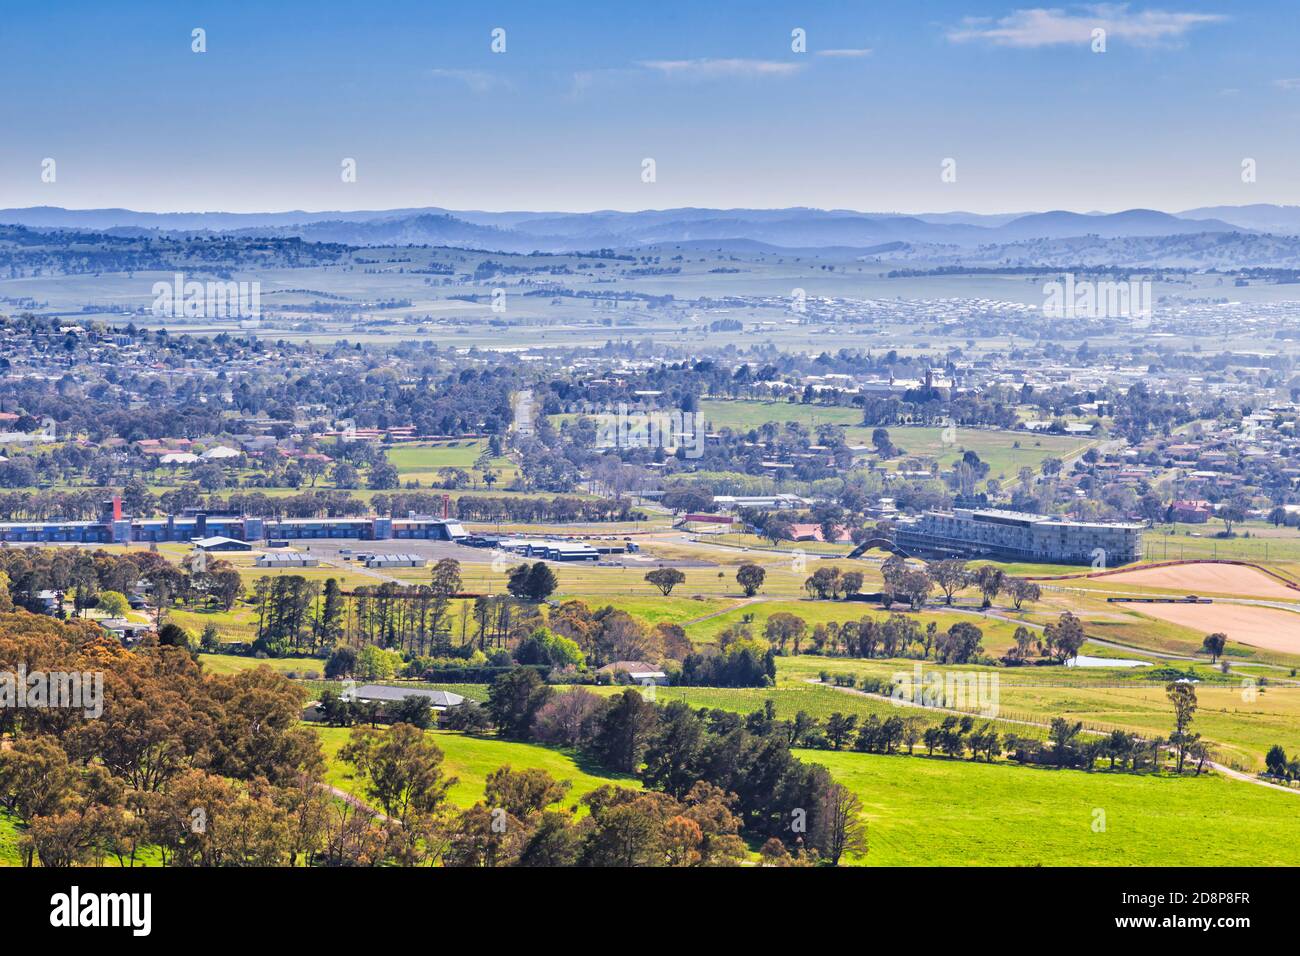 Aussichtspunkt auf dem Mt Panorama zur Stadt Bathurst und zum Autorennen an einem sonnigen Tag. Stockfoto